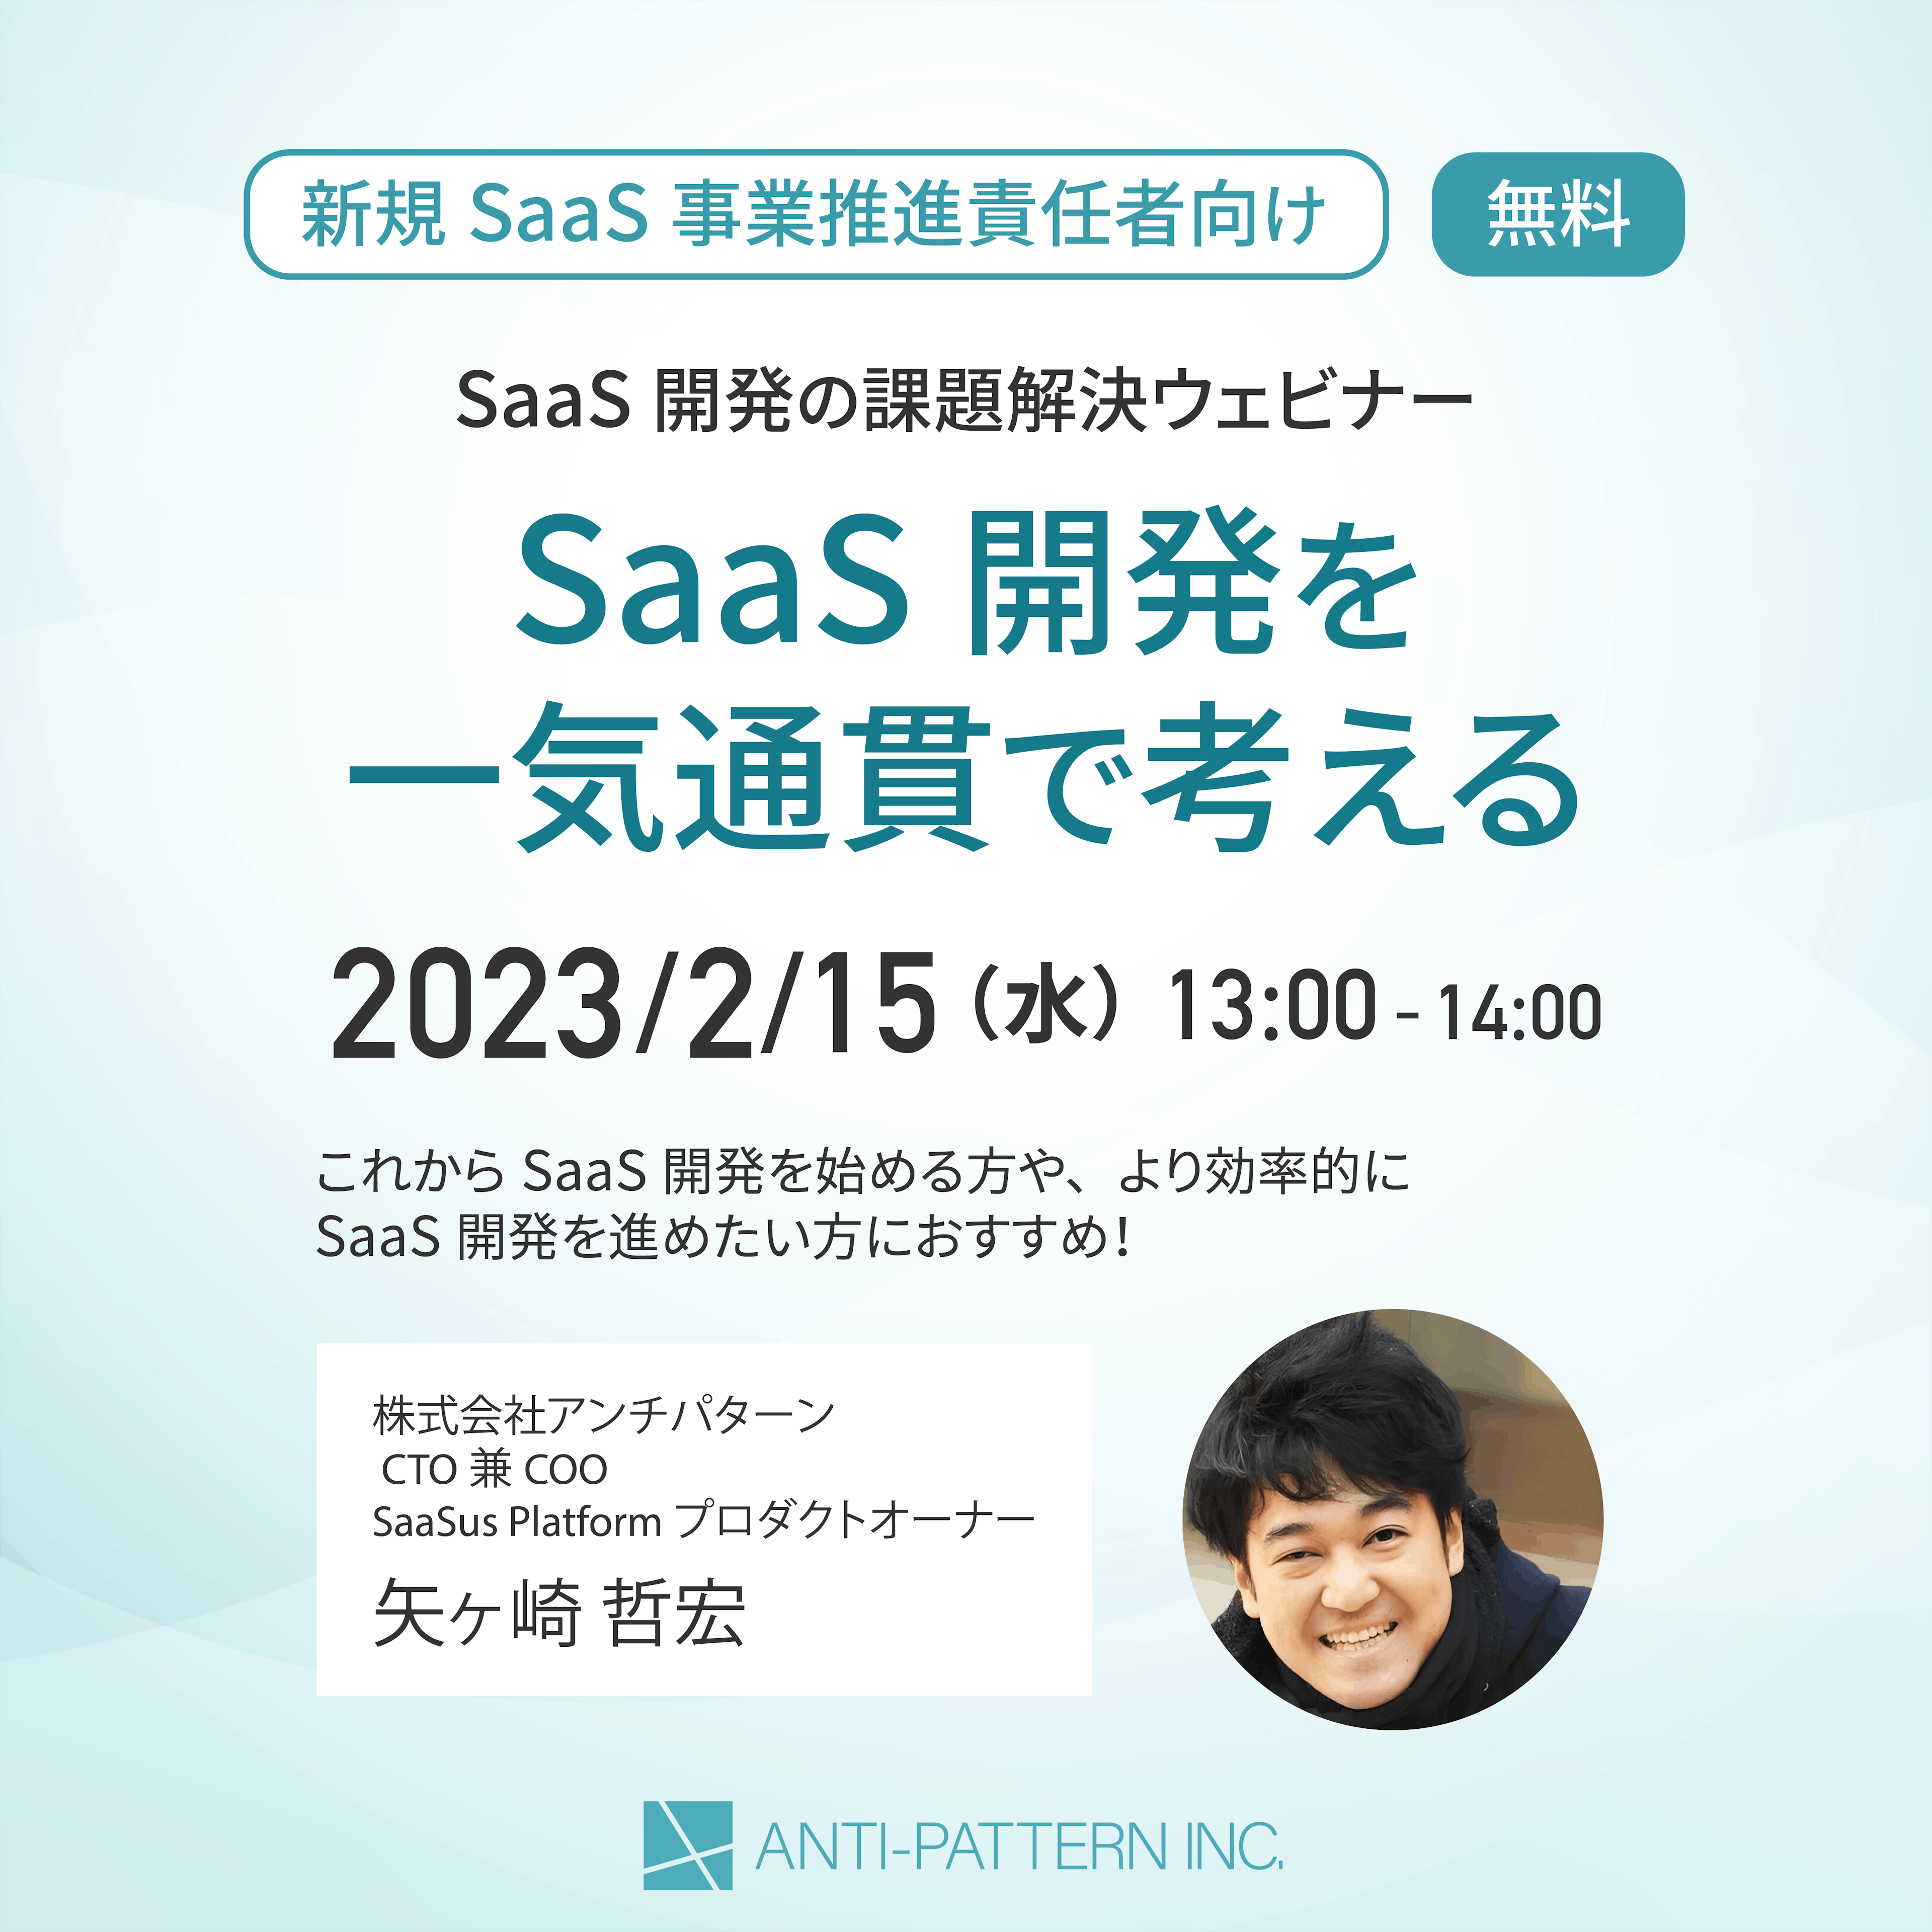 [新規SaaS事業推進責任者向け]
SaaS開発の課題解決ウェビナー開催のお知らせ